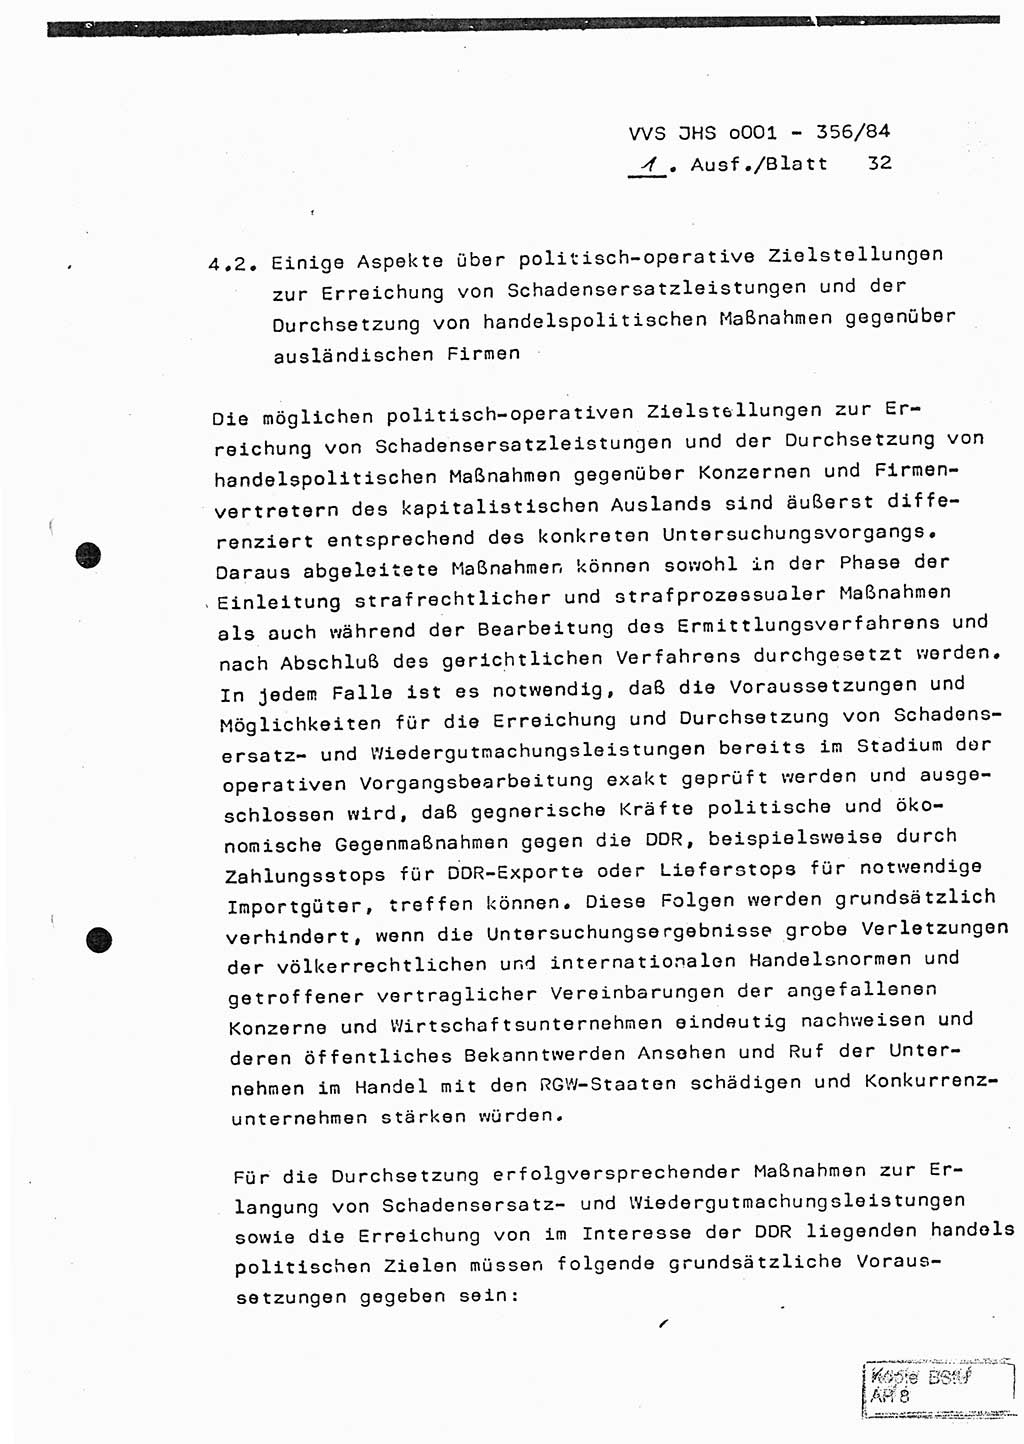 Diplomarbeit, Major Lutz Rahaus (HA Ⅸ/3), Ministerium für Staatssicherheit (MfS) [Deutsche Demokratische Republik (DDR)], Juristische Hochschule (JHS), Vertrauliche Verschlußsache (VVS) o001-356/84, Potsdam 1984, Seite 32 (Dipl.-Arb. MfS DDR JHS VVS o001-356/84 1984, S. 32)